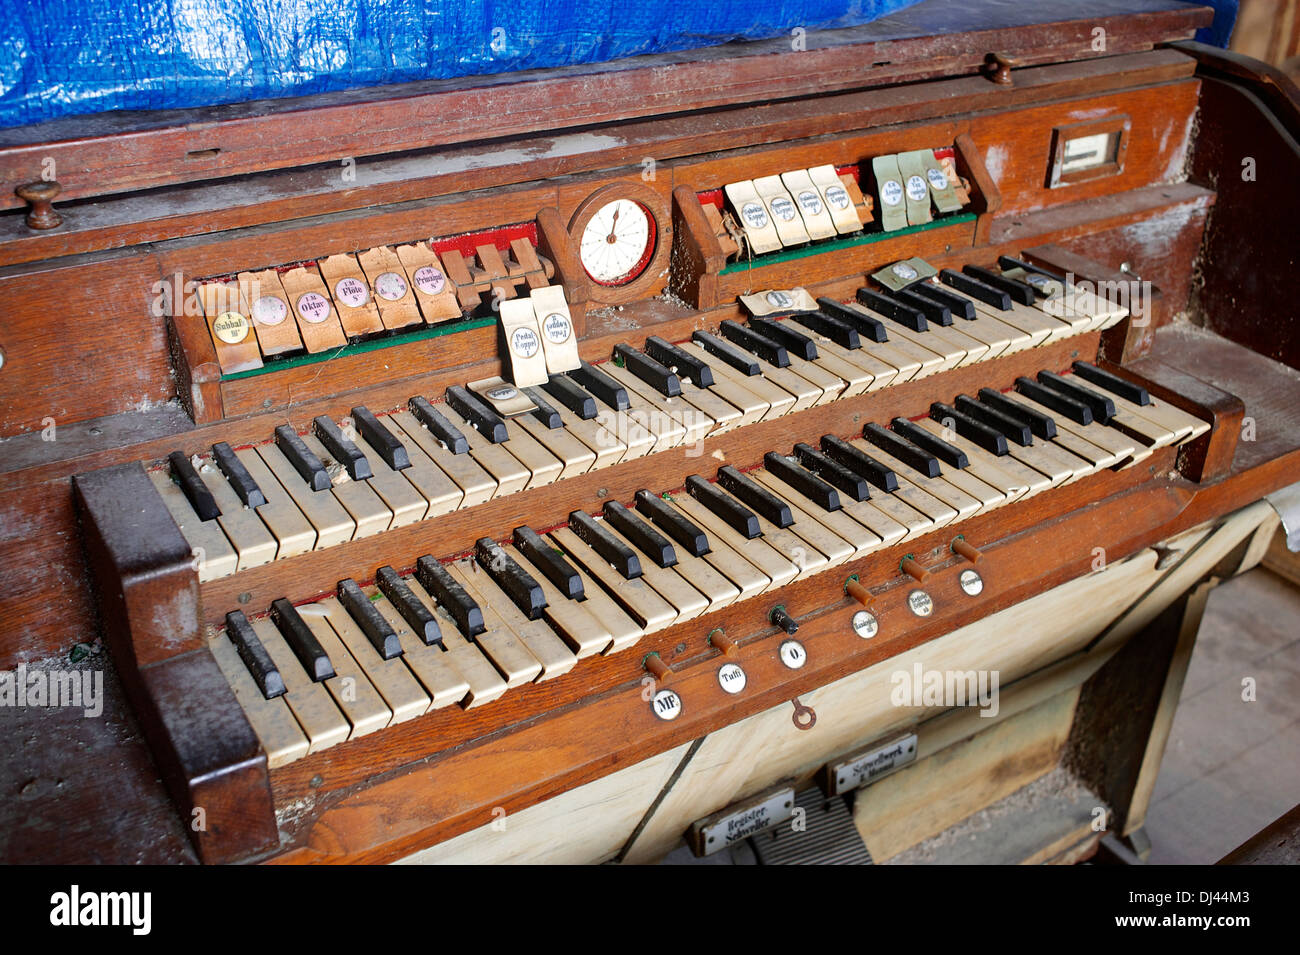 Damaged church organ, Santiago de Cuba Stock Photo